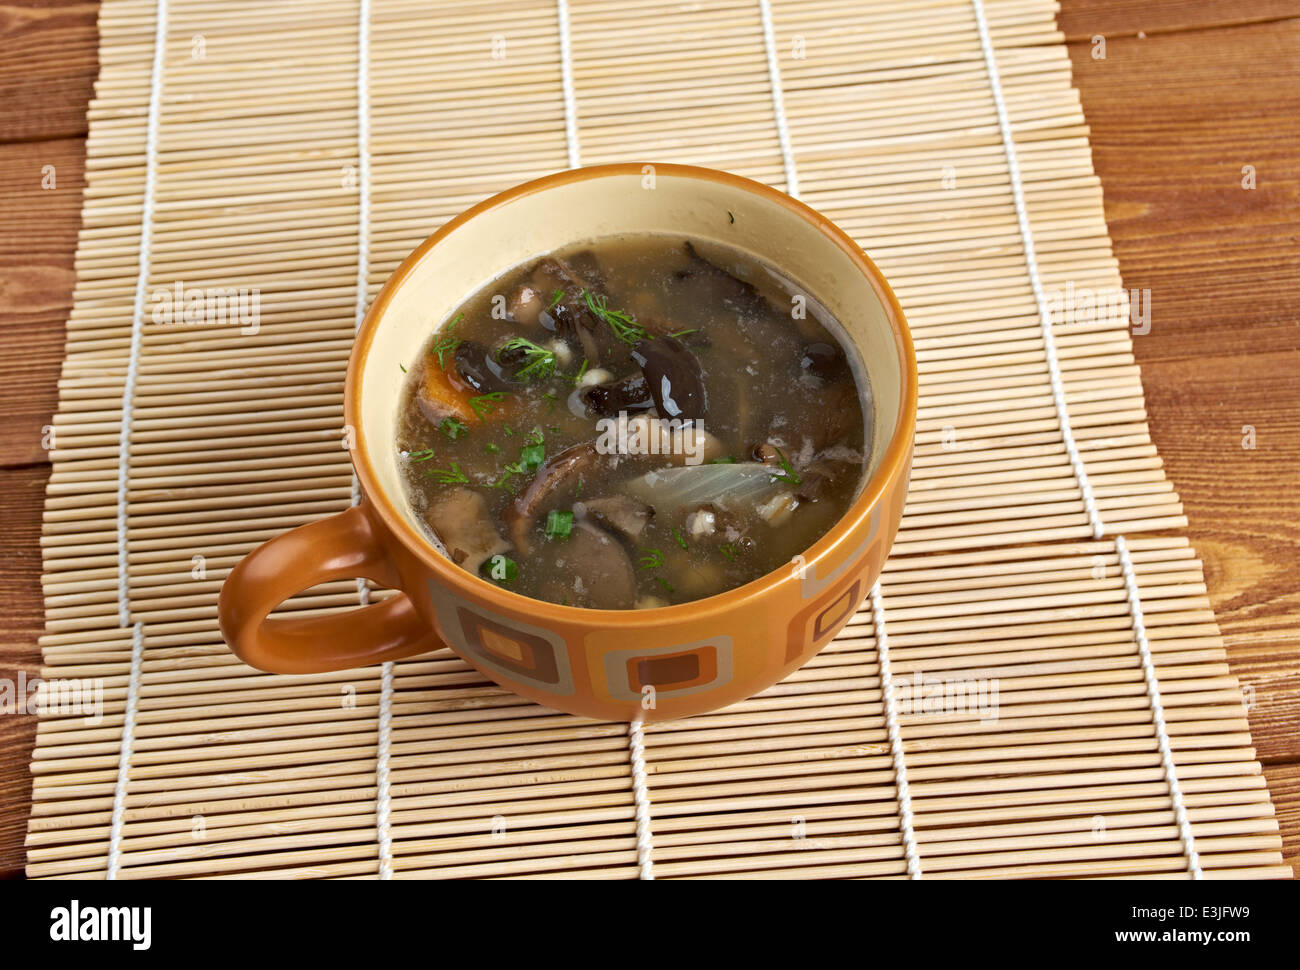 Russische Sauerkraut Suppe mit Pilzen und Graupen Stockfotografie - Alamy